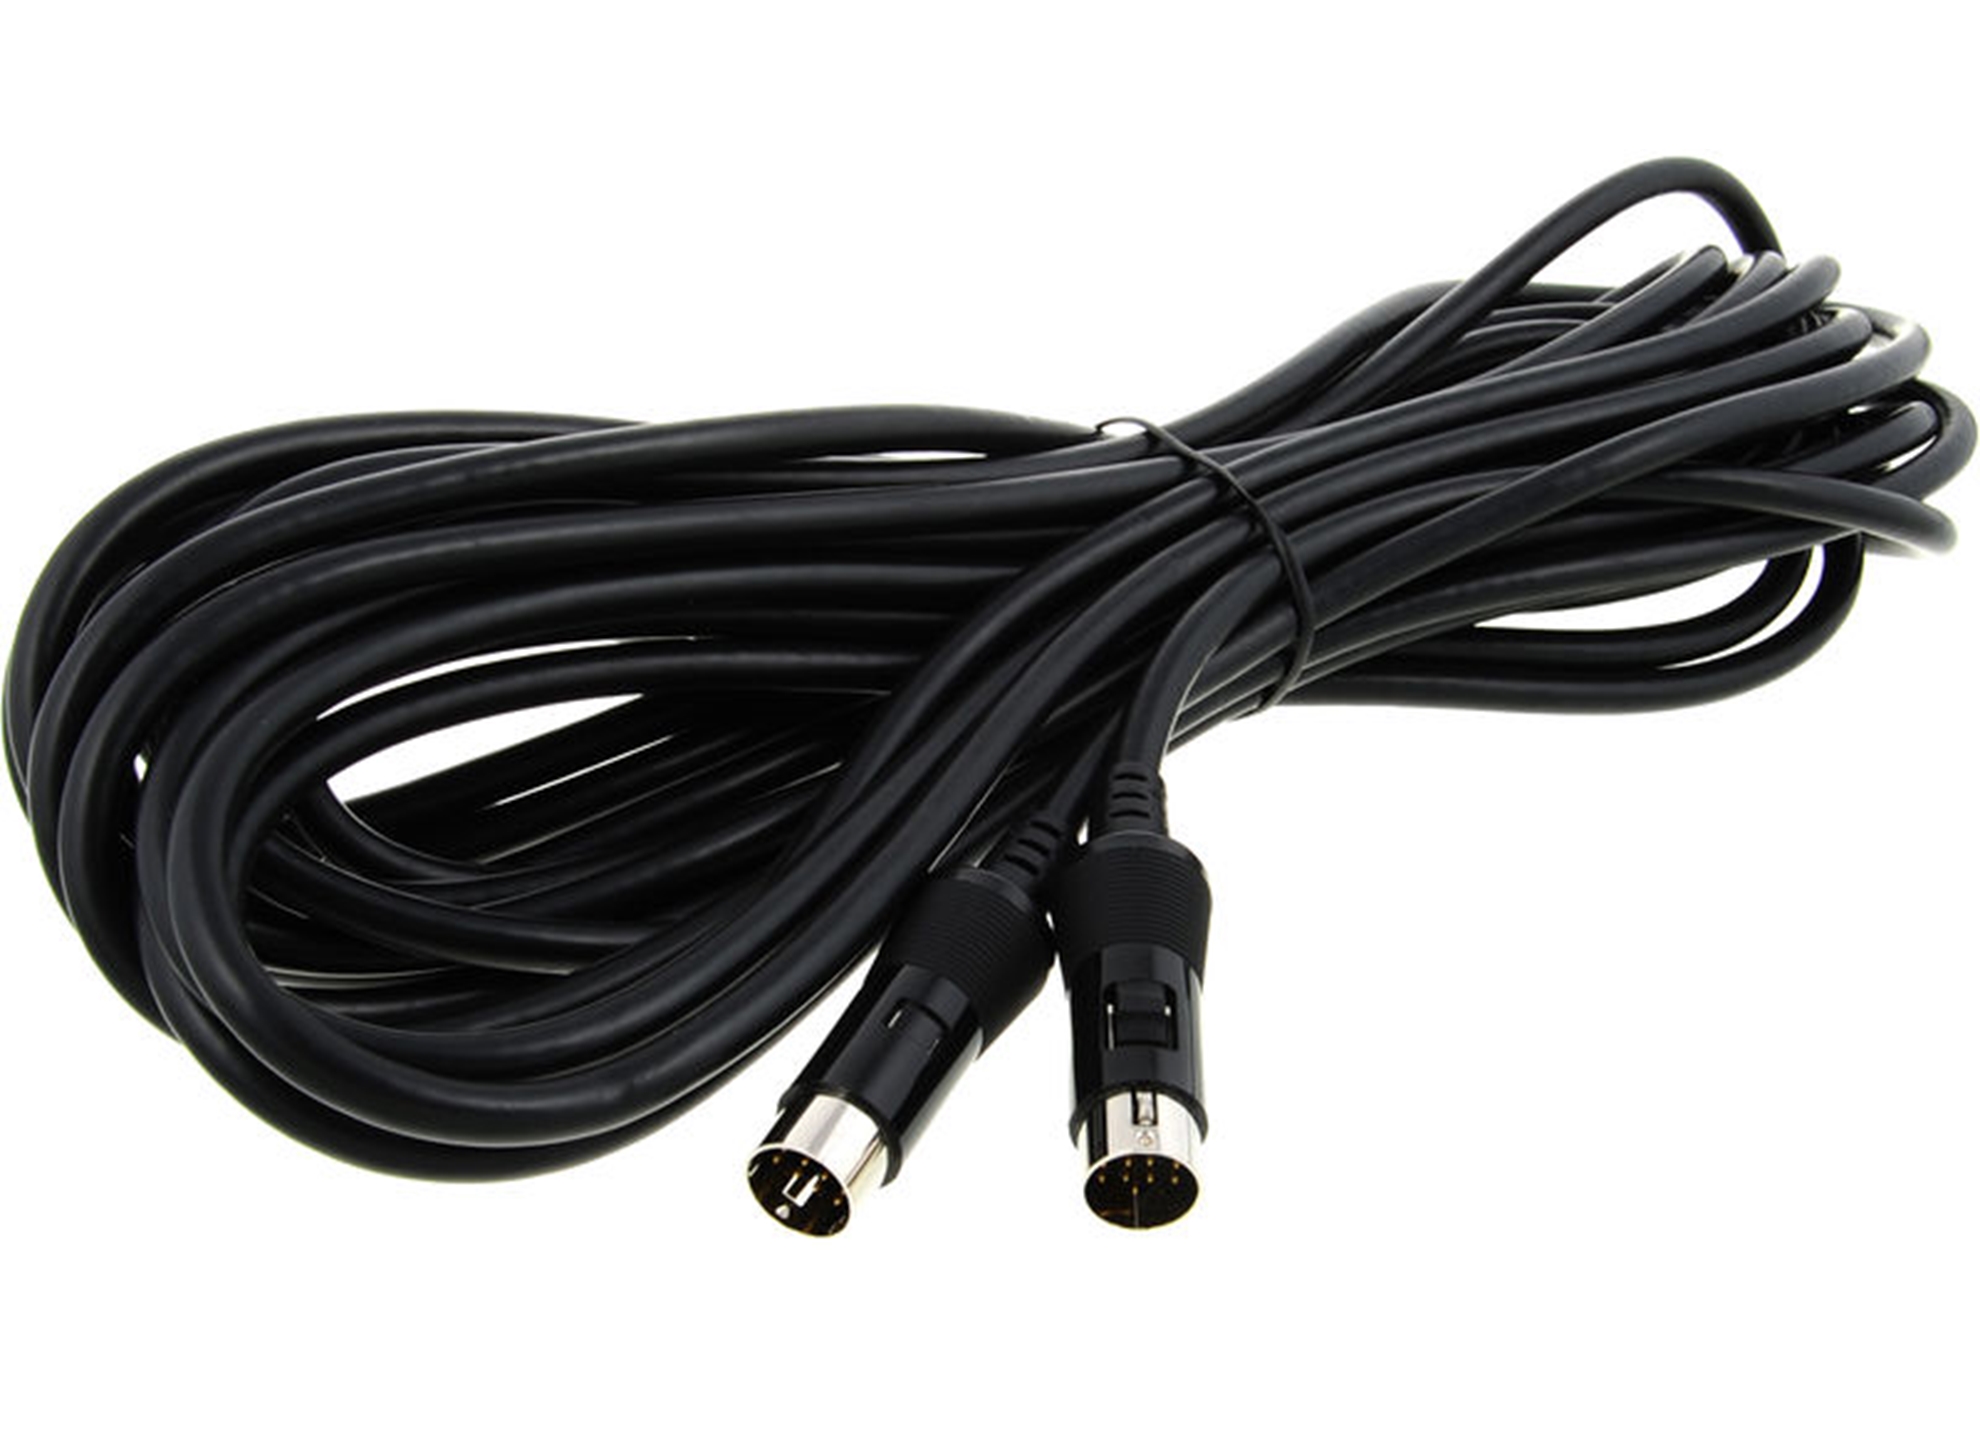 GKC-10 13-Pin Cable